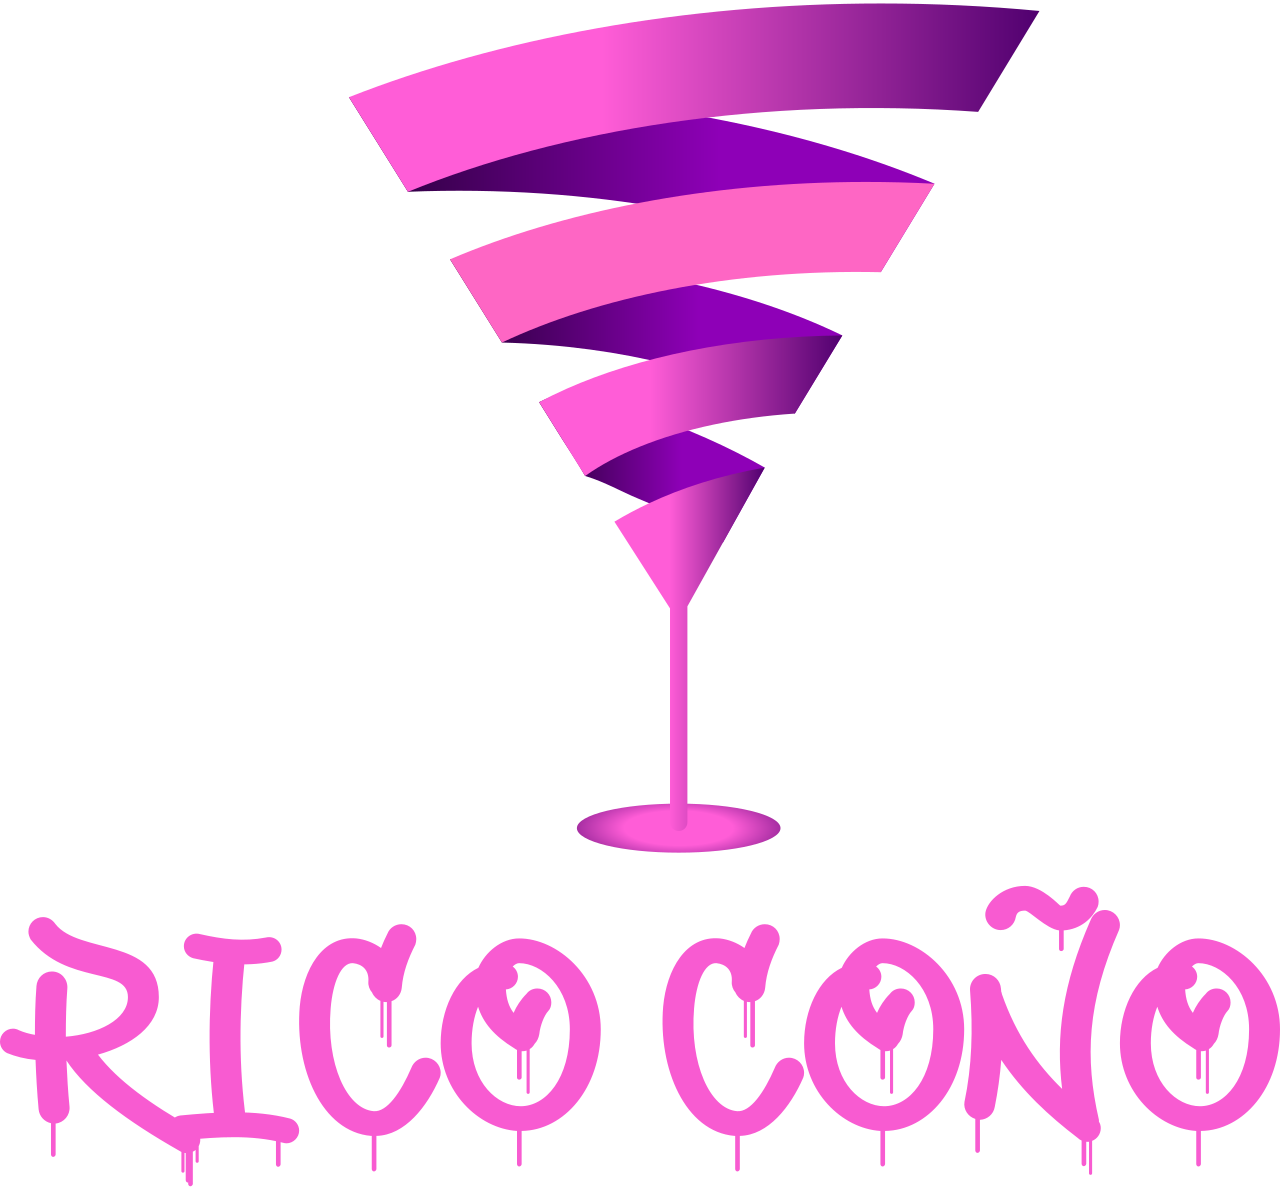 Rico coño's web page